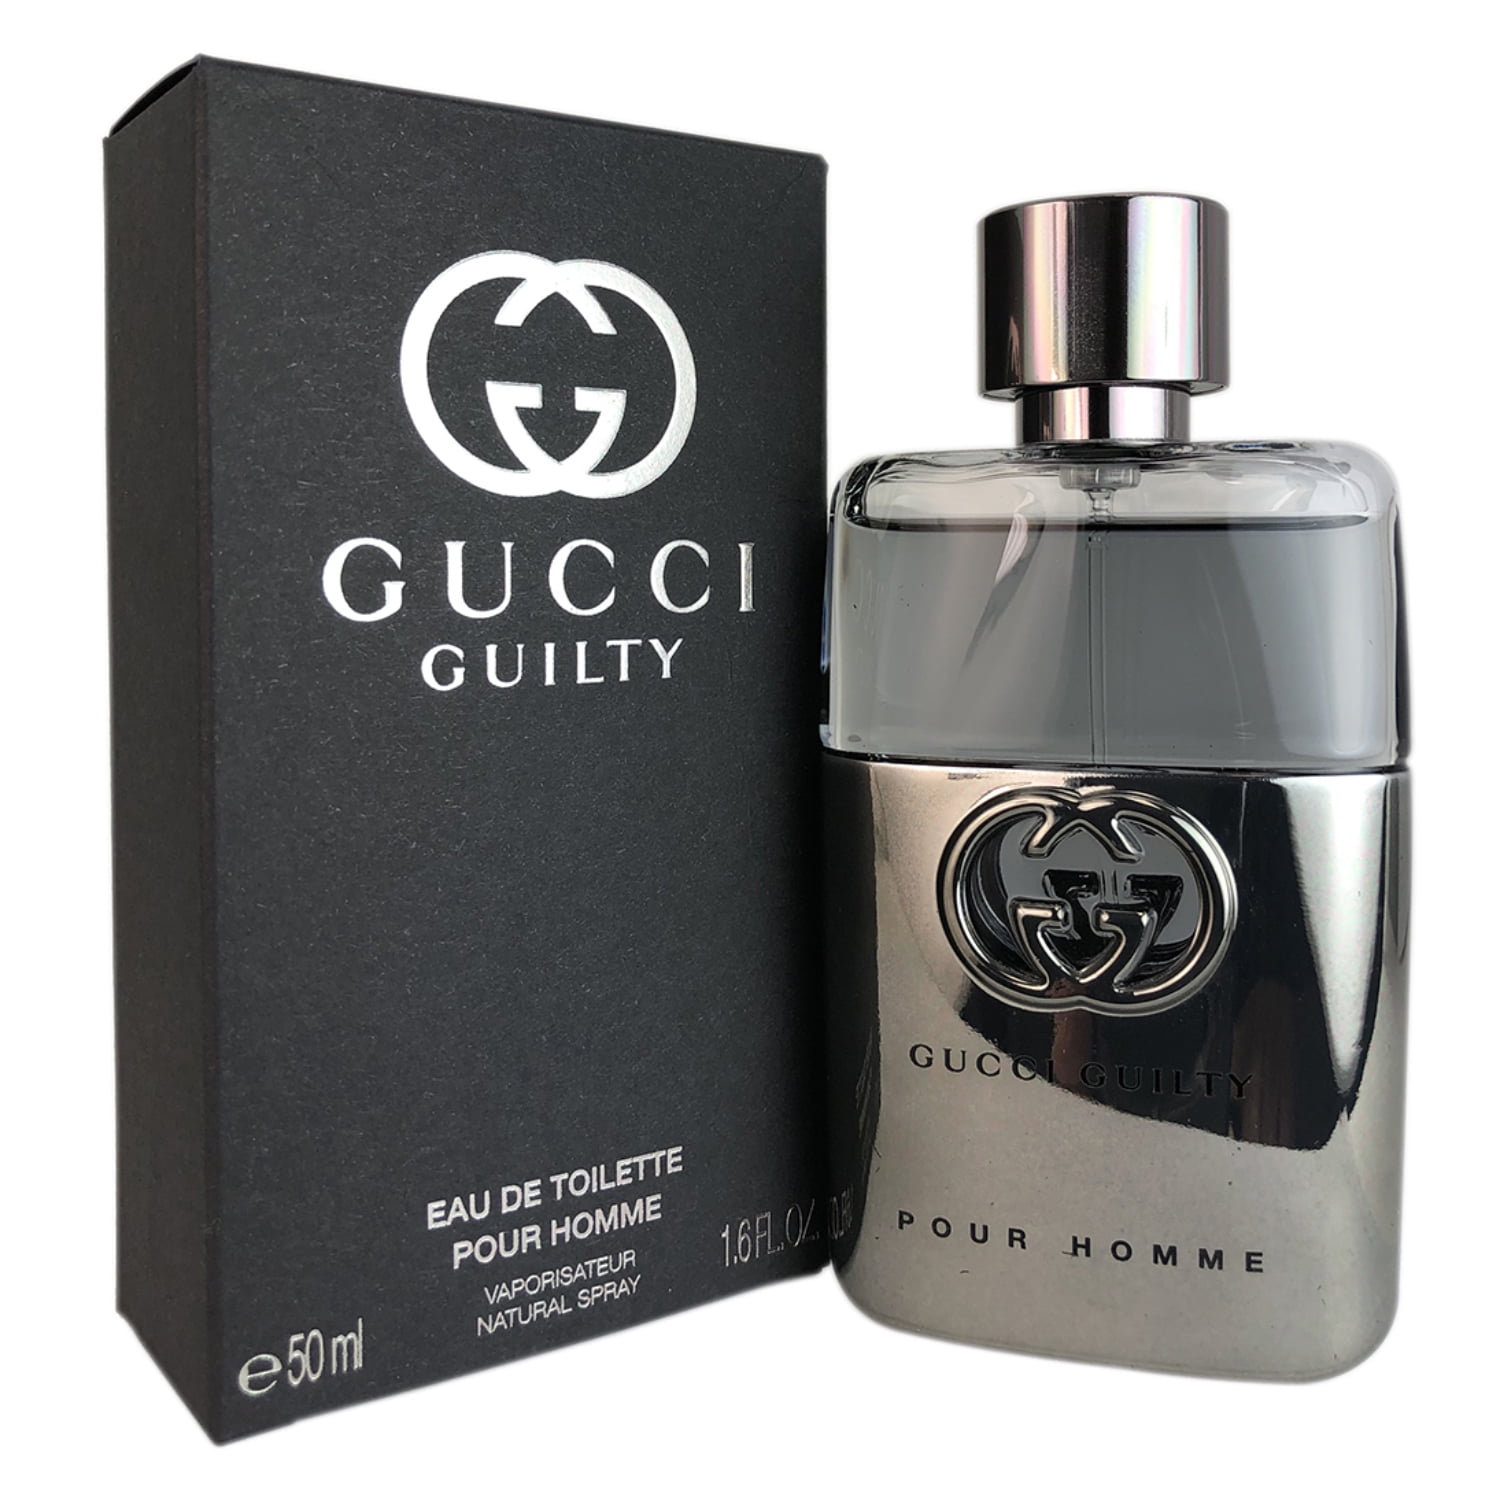 Guilty Pour Homme by Gucci for Men 1.6 oz Eau de Toilette Spray